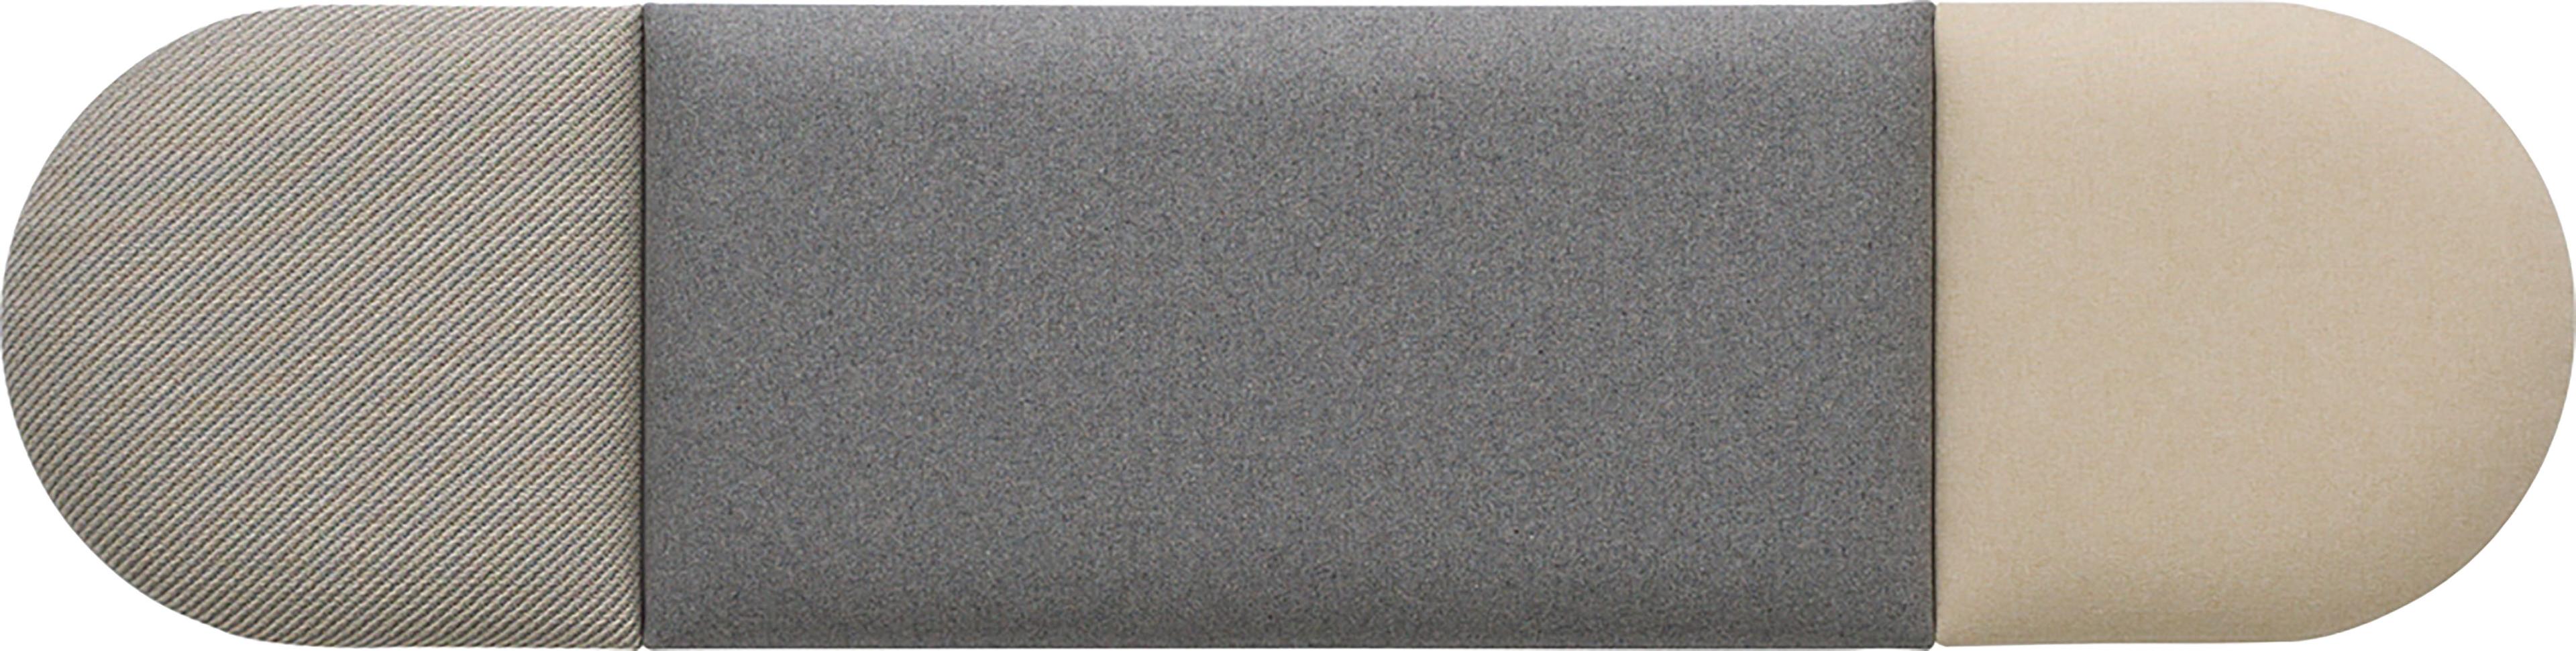 Conjunto de paneles tapizados regulares Soform pequeños en tonos beige y gris